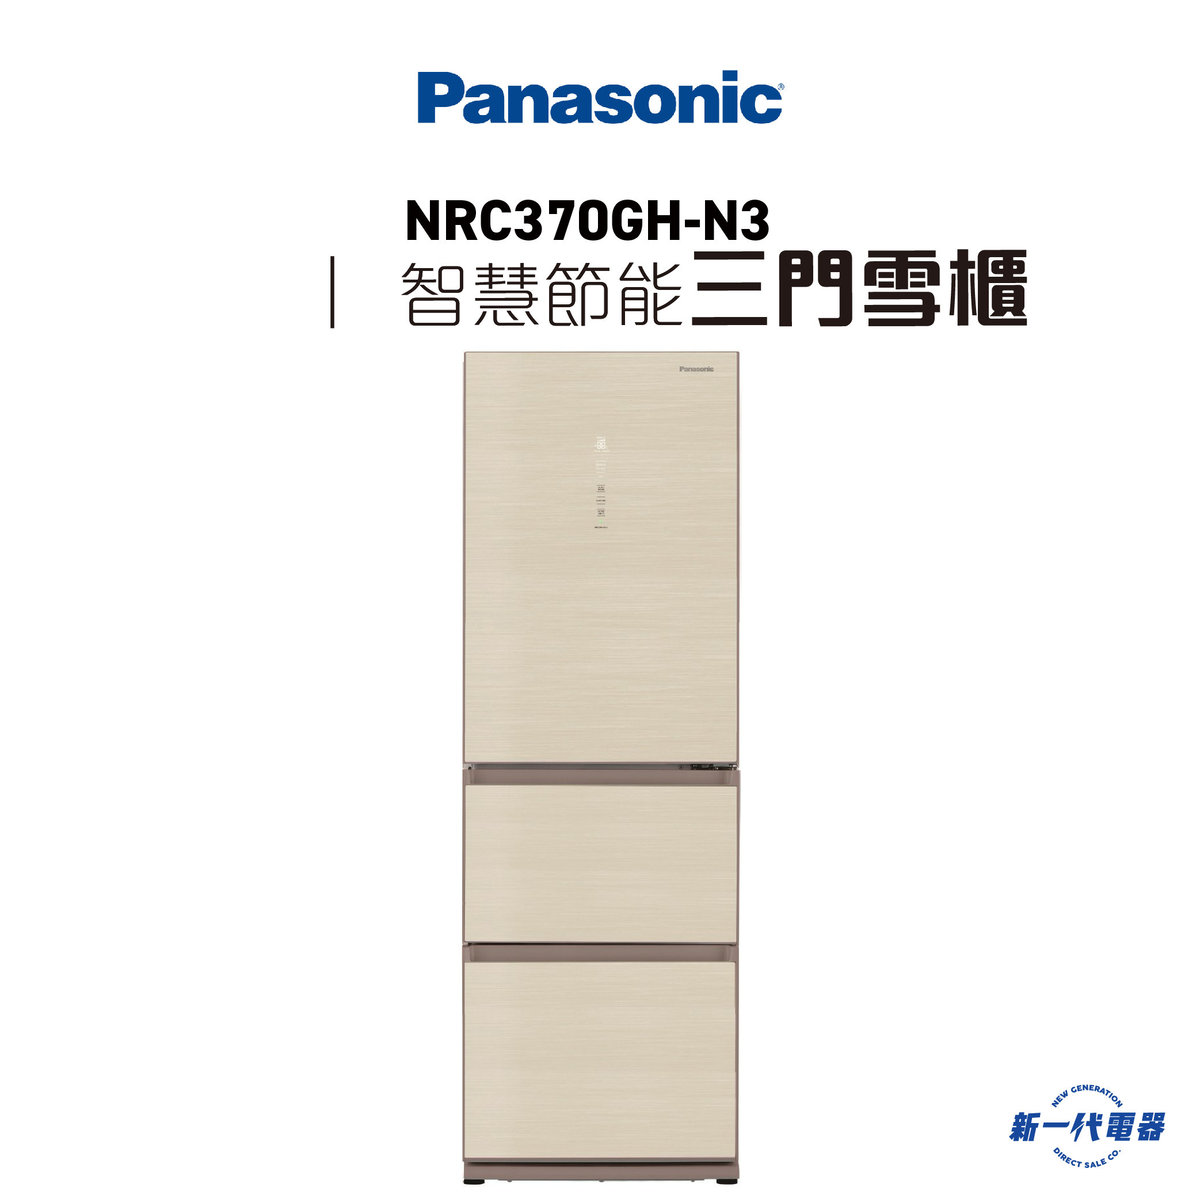 NRC370GH-N3  -303公升 ECONAVI 智慧節能三門雪櫃 (香檳金) (NR-C370GH-N3)